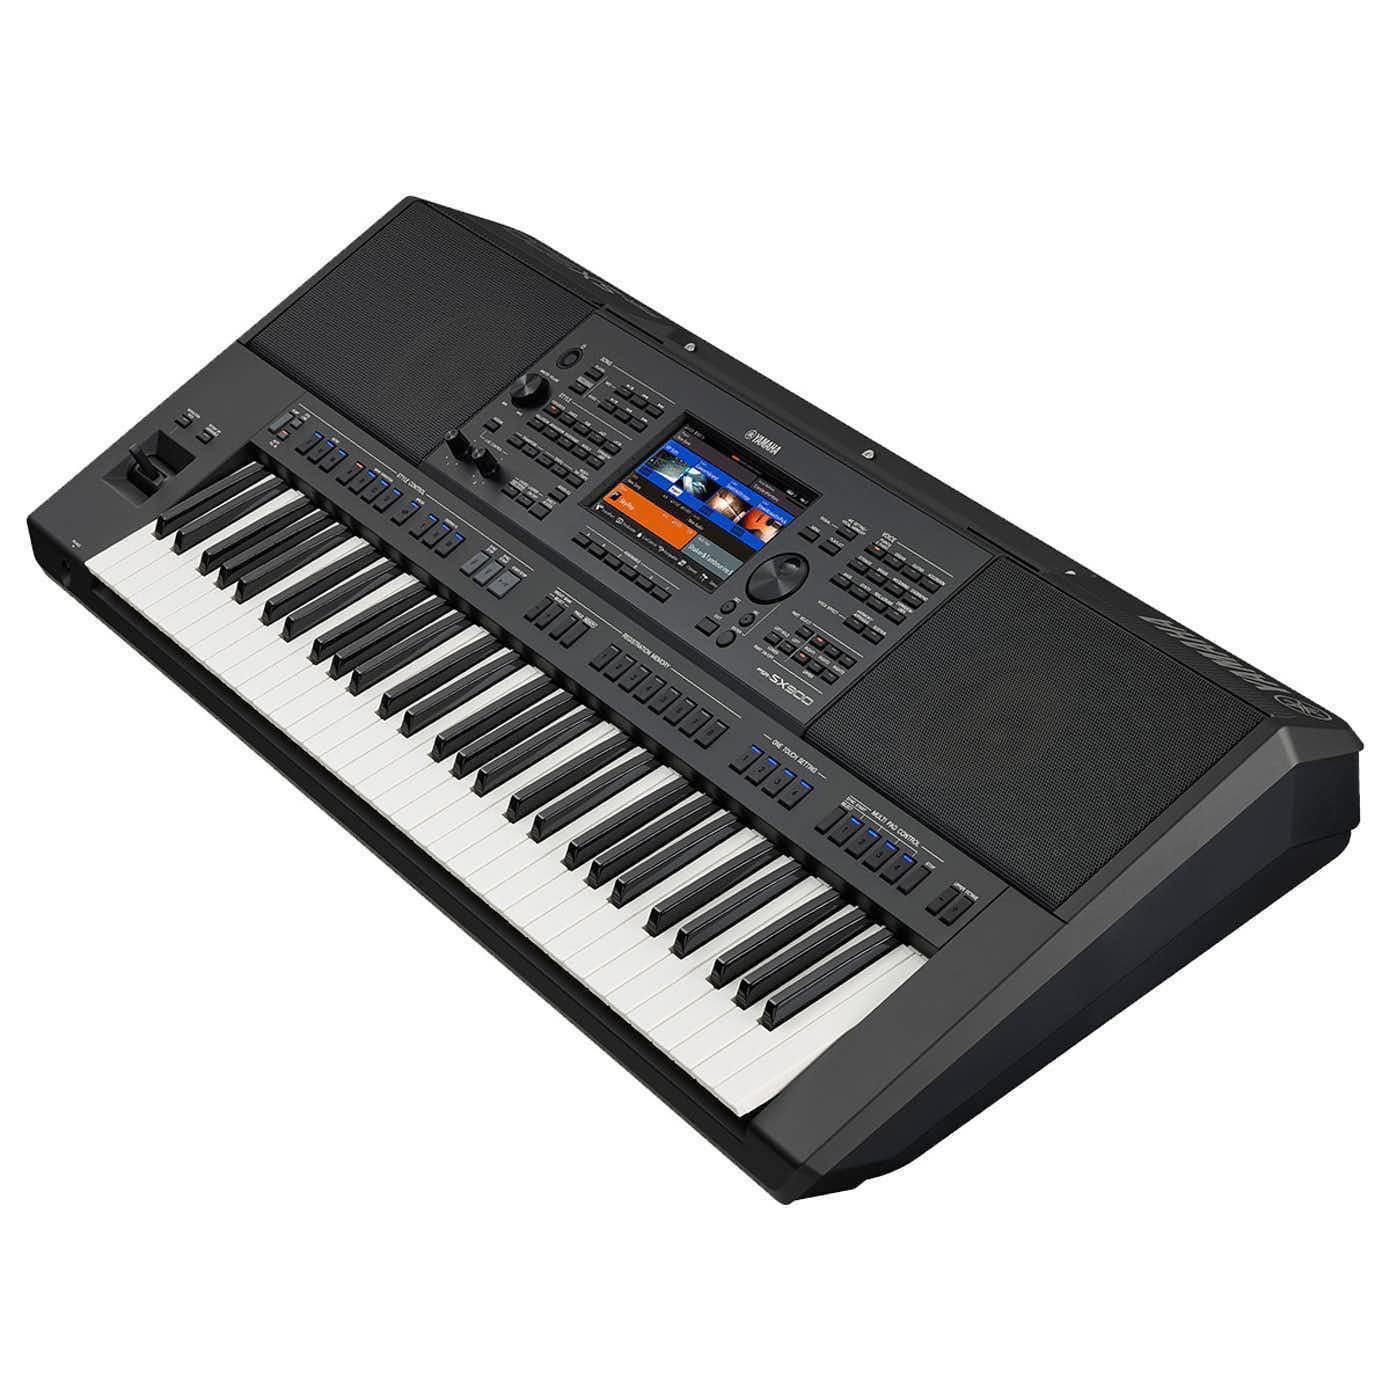 The PSR-SX900 Keyboard